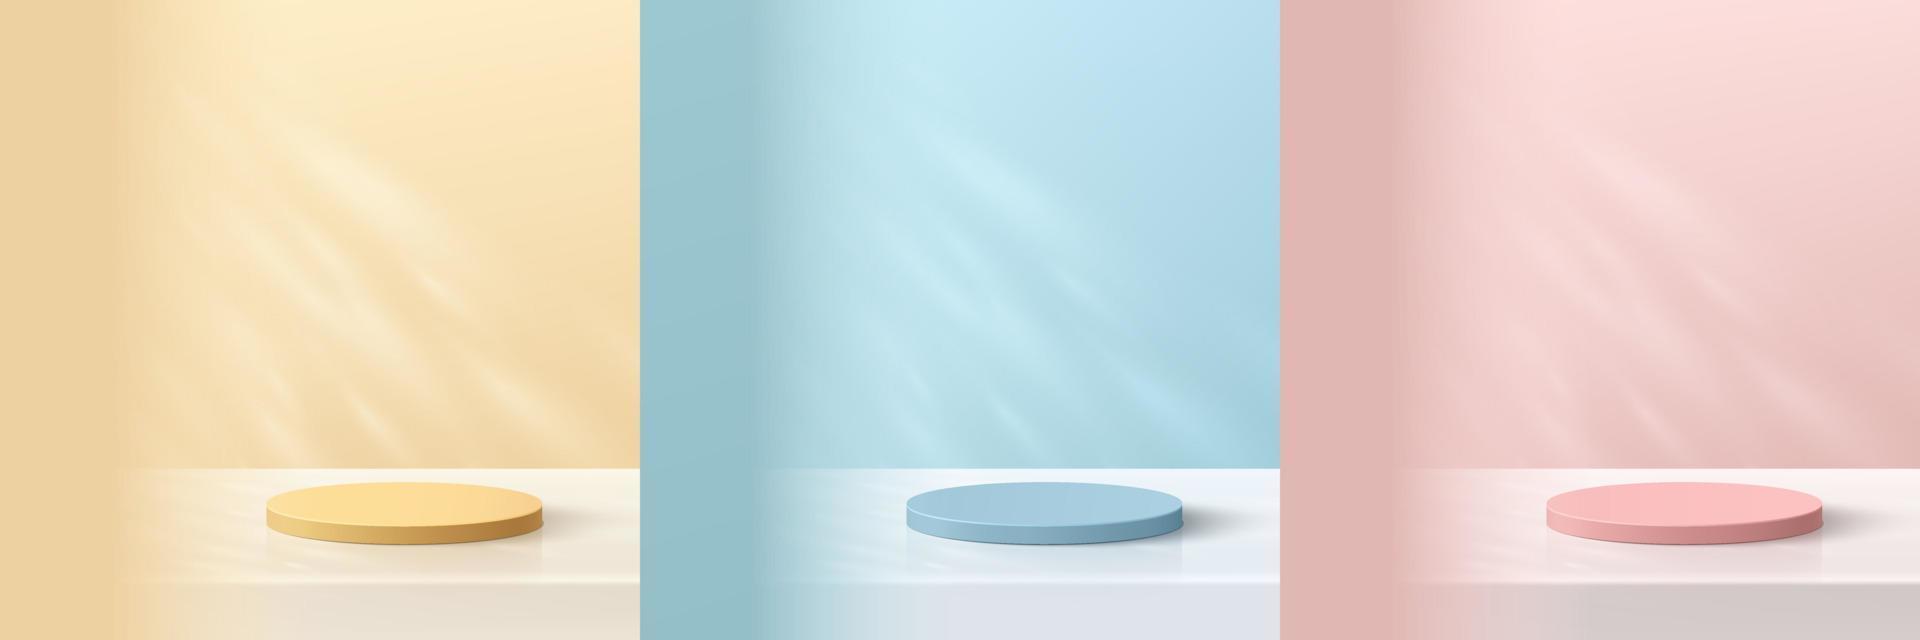 conjunto de podio de pedestal de cilindro 3d realista en fondo de escena amarillo, azul, rosa con luz y sombra. exhibición de productos de maqueta de escena de pared mínima abstracta, escaparate de escenario. formas geométricas vectoriales. vector